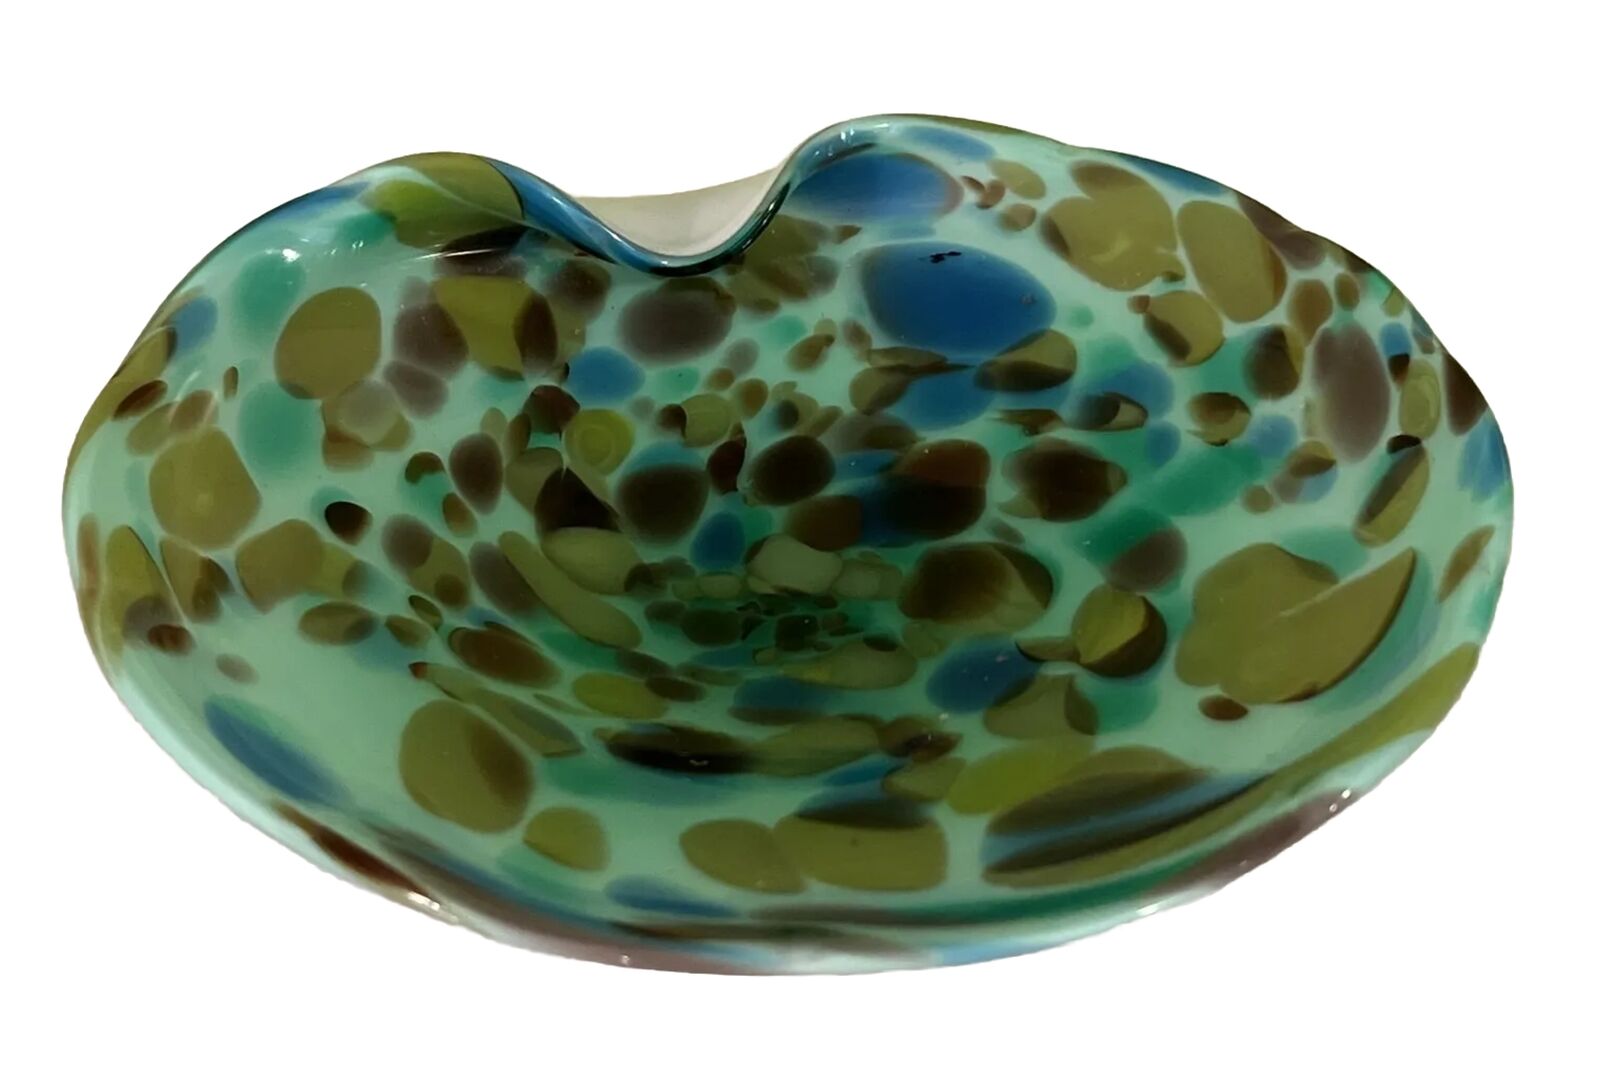 Murano Art Glass Cased Ashtray Dish Blue Green Swirl Mottled Spotted Vintage, 8”